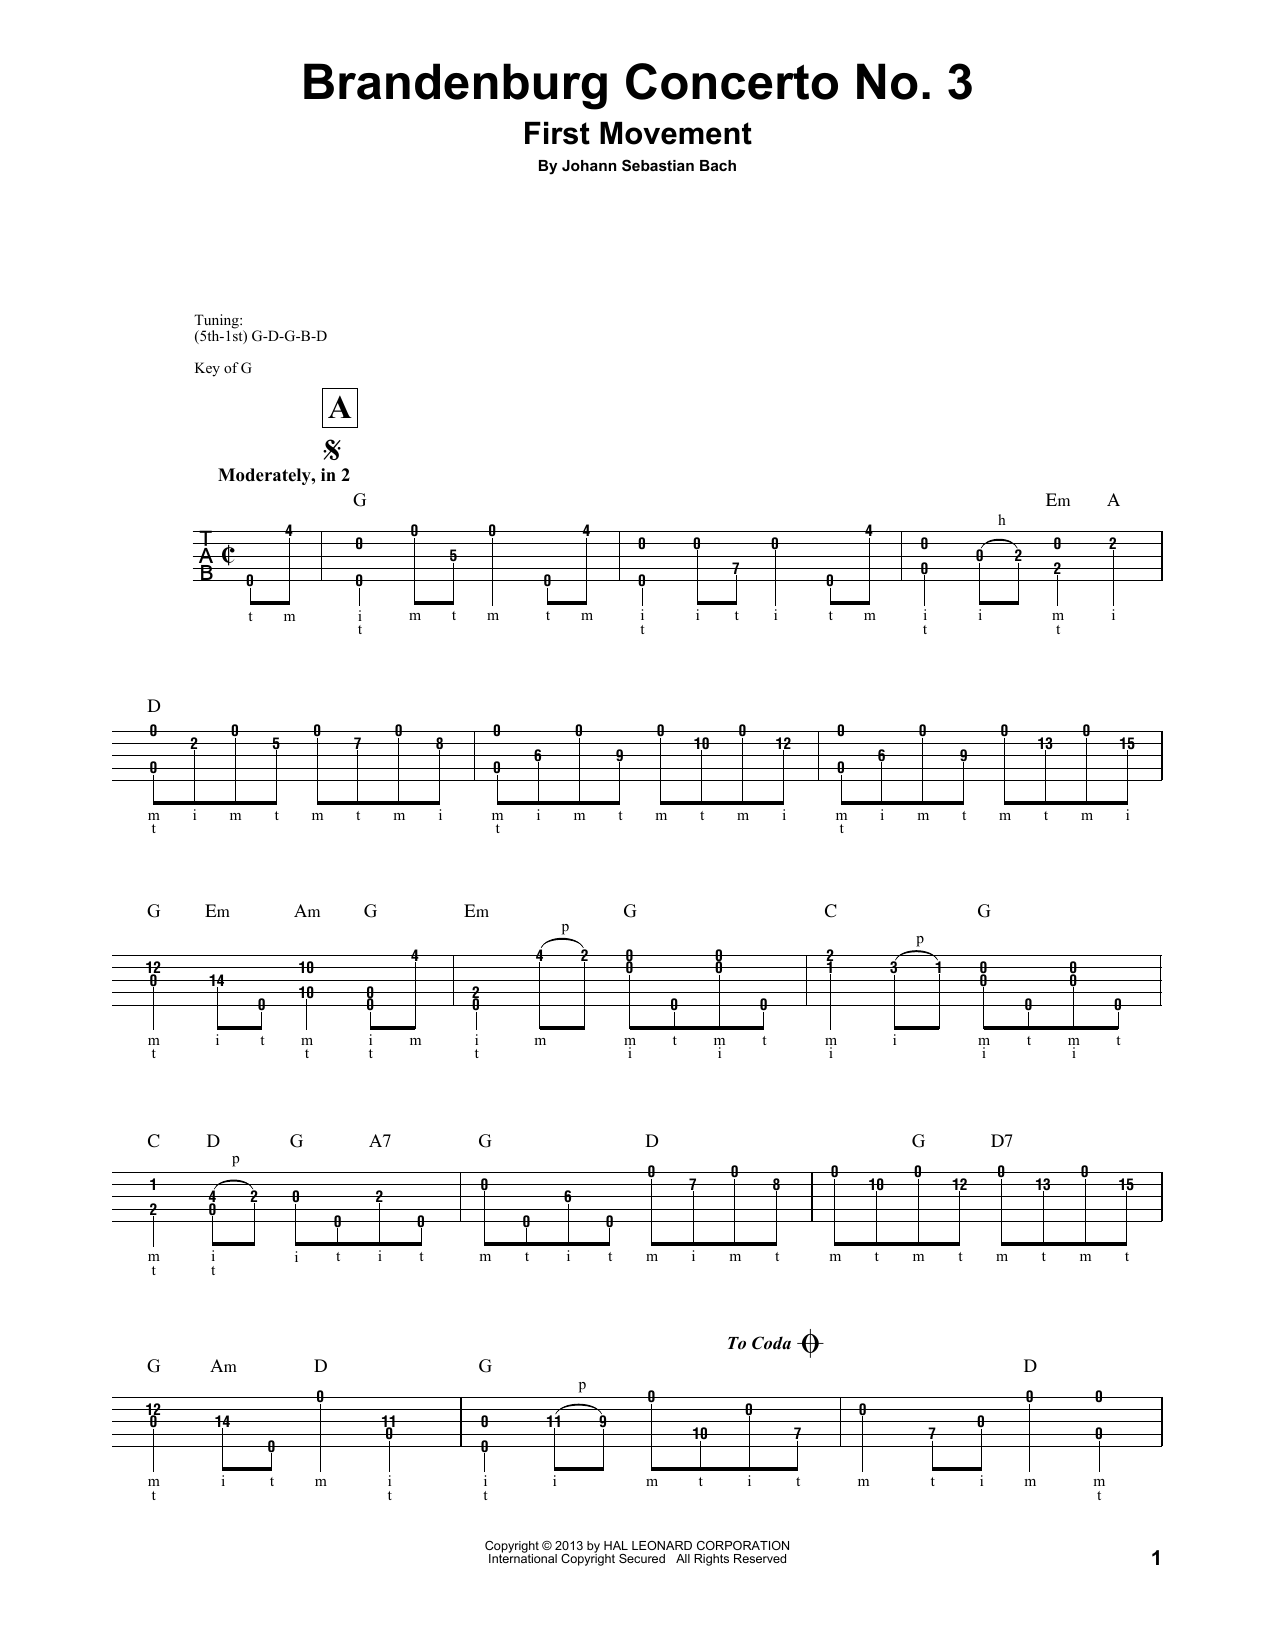 Mark Phillips Brandenburg Concerto No. 3 Sheet Music Notes & Chords for Banjo - Download or Print PDF